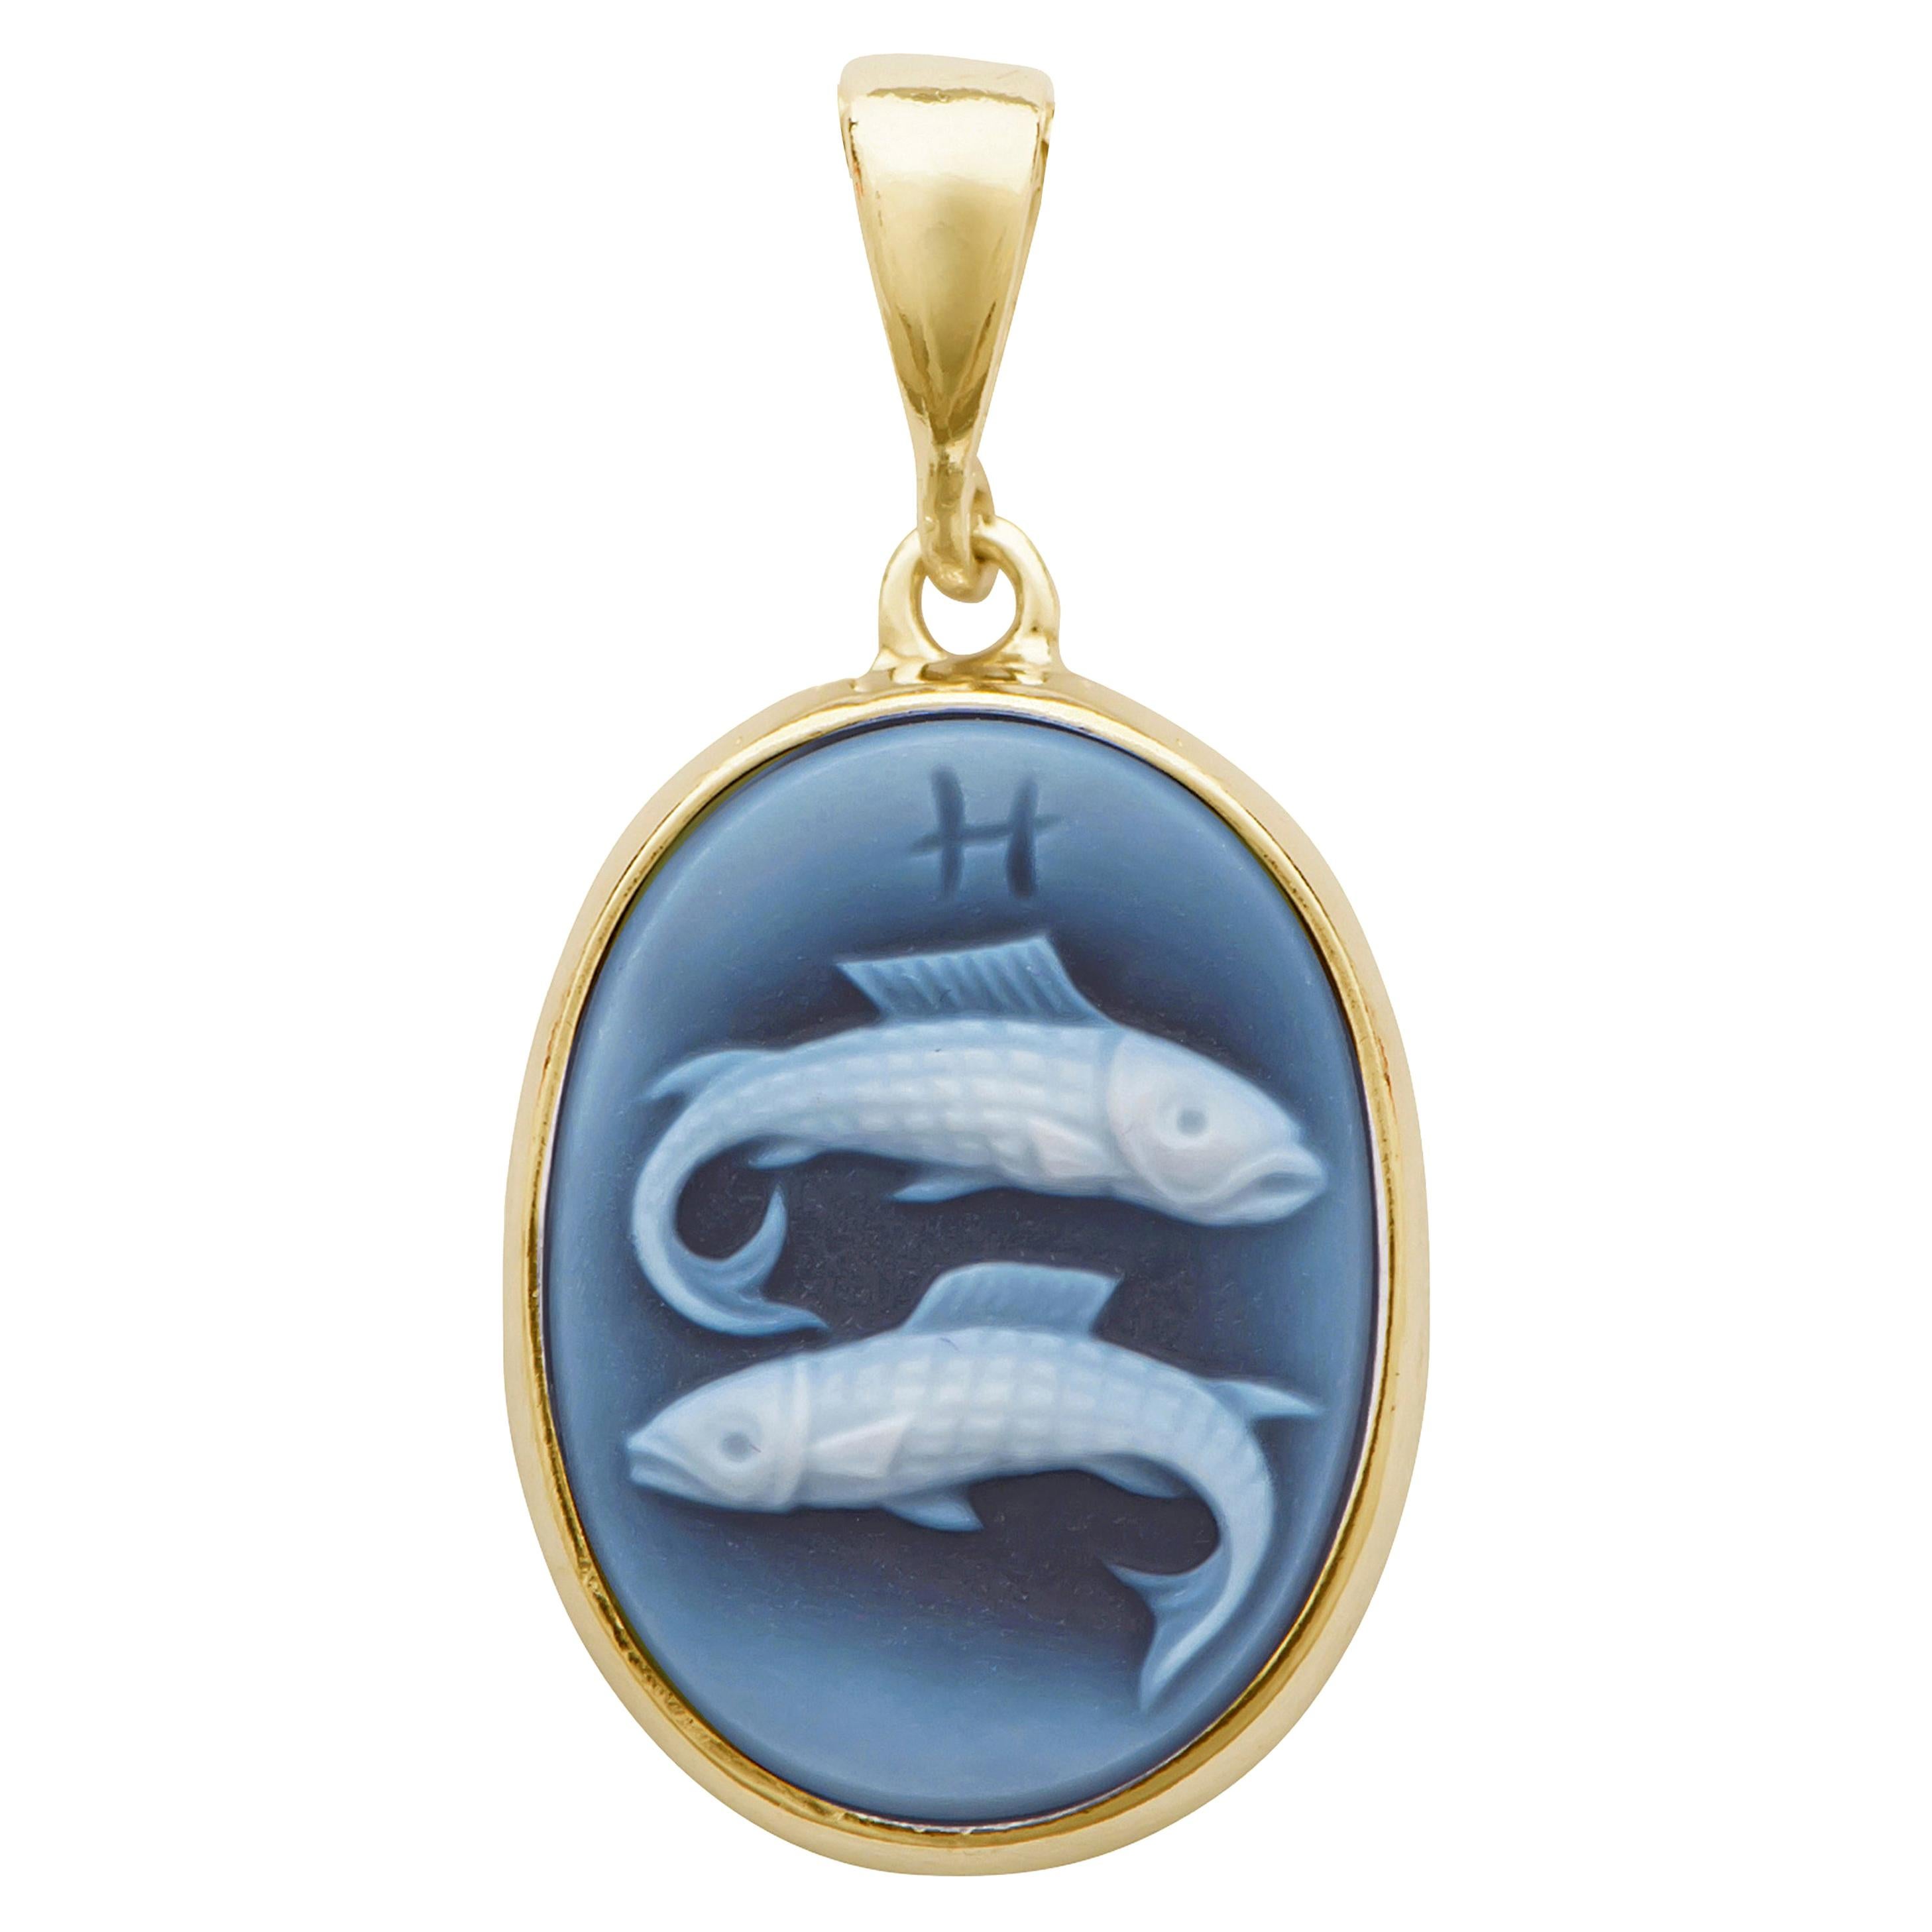 Collier pendentif en argent sterling 925 avec camée agate du zodiaque représentant des poissons, sculpté à la main